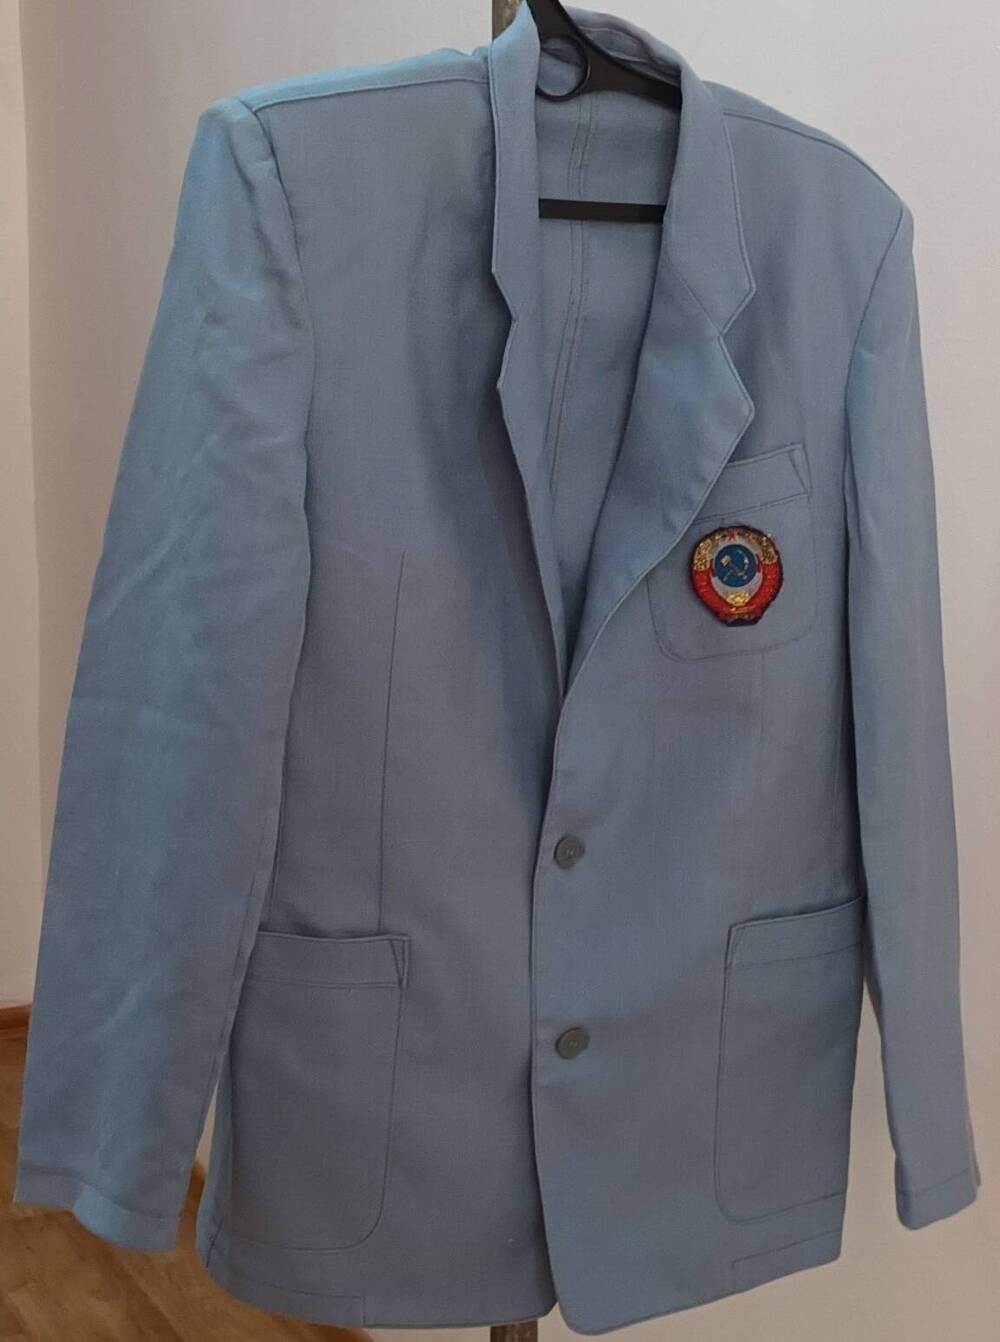 Пиджак от костюма Попивненко Николая Васильевича, участника ХII Всемирного фестиваля молодёжи и студентов.